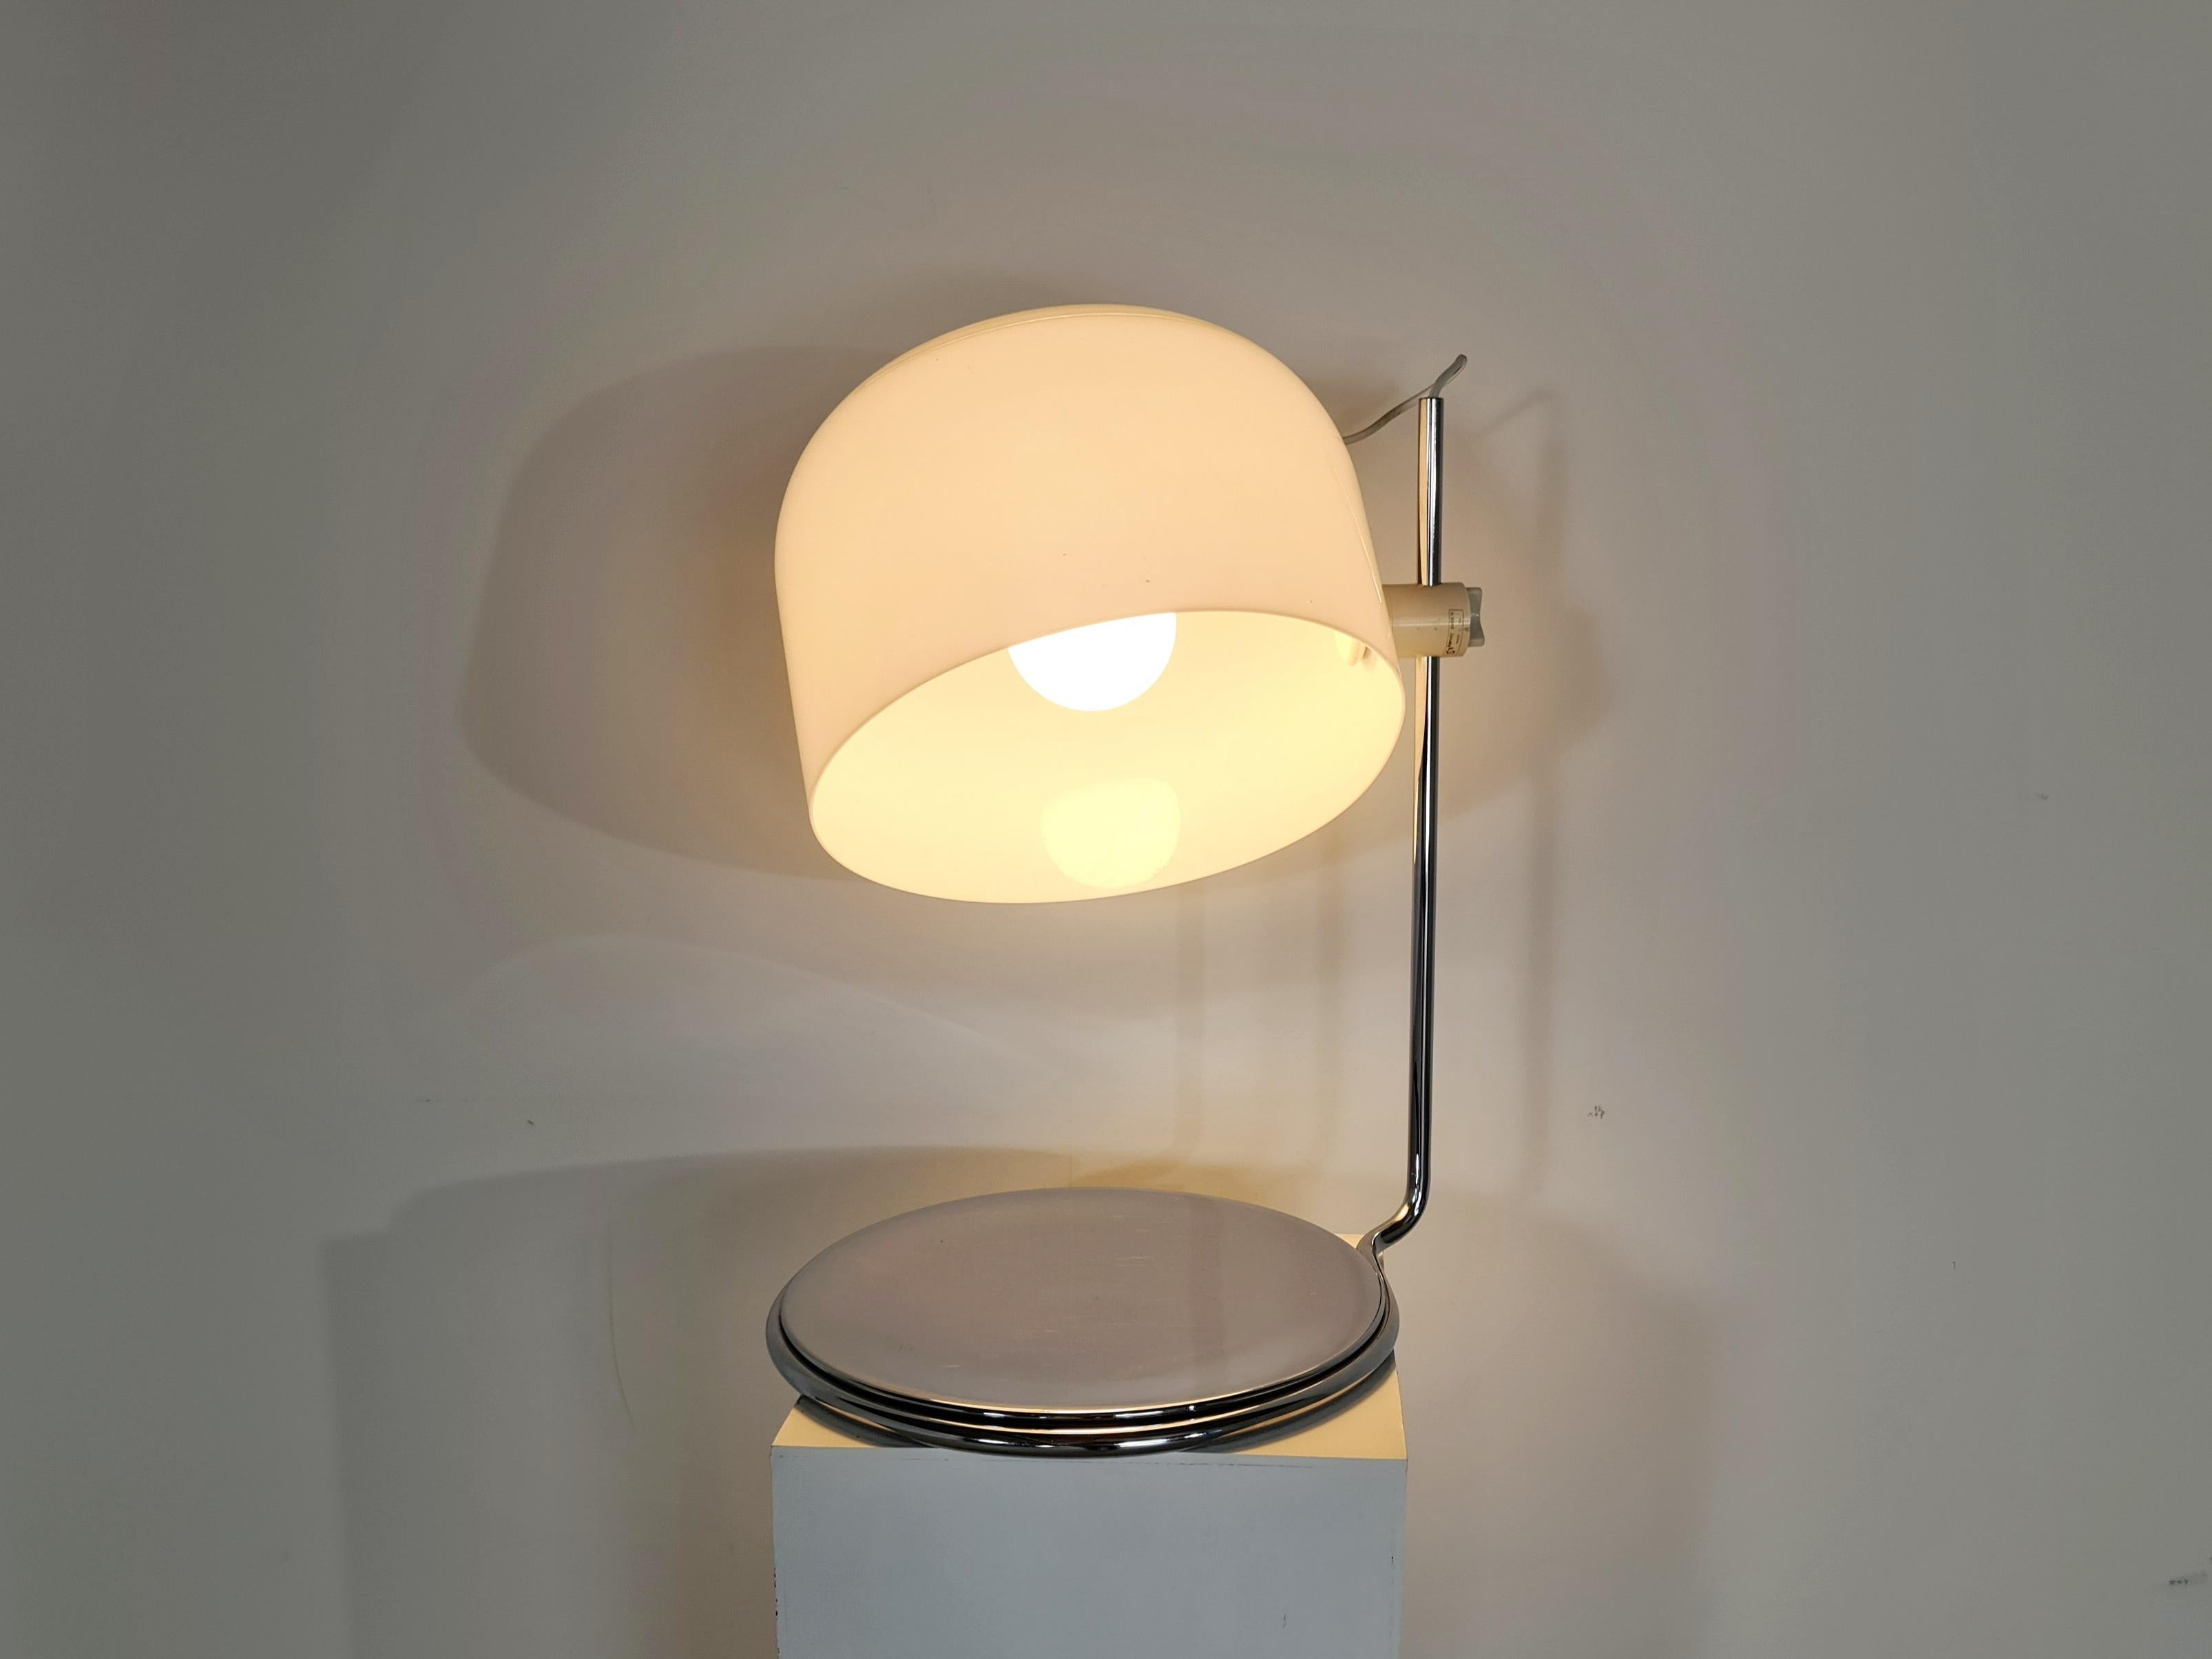 Eine seltene Tischleuchte, entworfen in den 60er Jahren von Harvey Guzzini für Guzzini, Italien. Fuß und Gestell aus verchromtem Metall, Lampenschirm aus weißem Kunststoff. Der Lampenschirm ist sehr verstellbar und gibt ein schönes Licht, wenn er